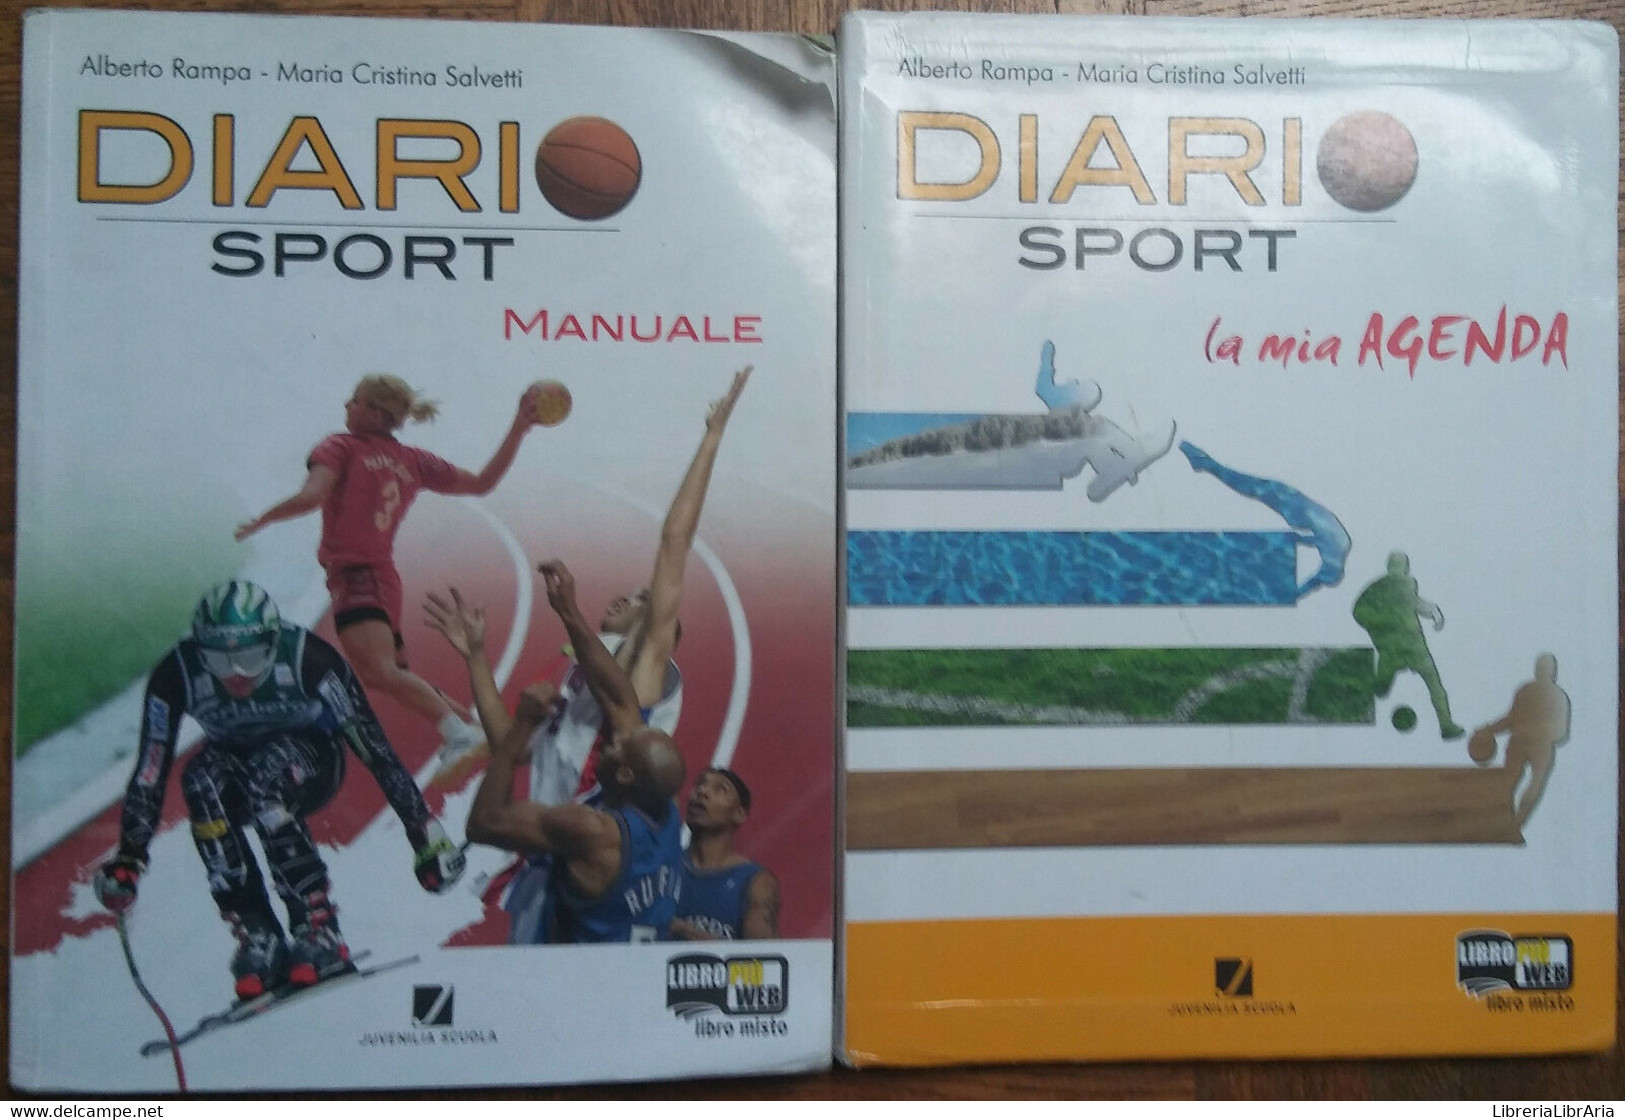 Diario Di Sport Manuale Agenda-Alberto Rampa;MCristina Salvetti-Juvenilia,2010-R - Jugend